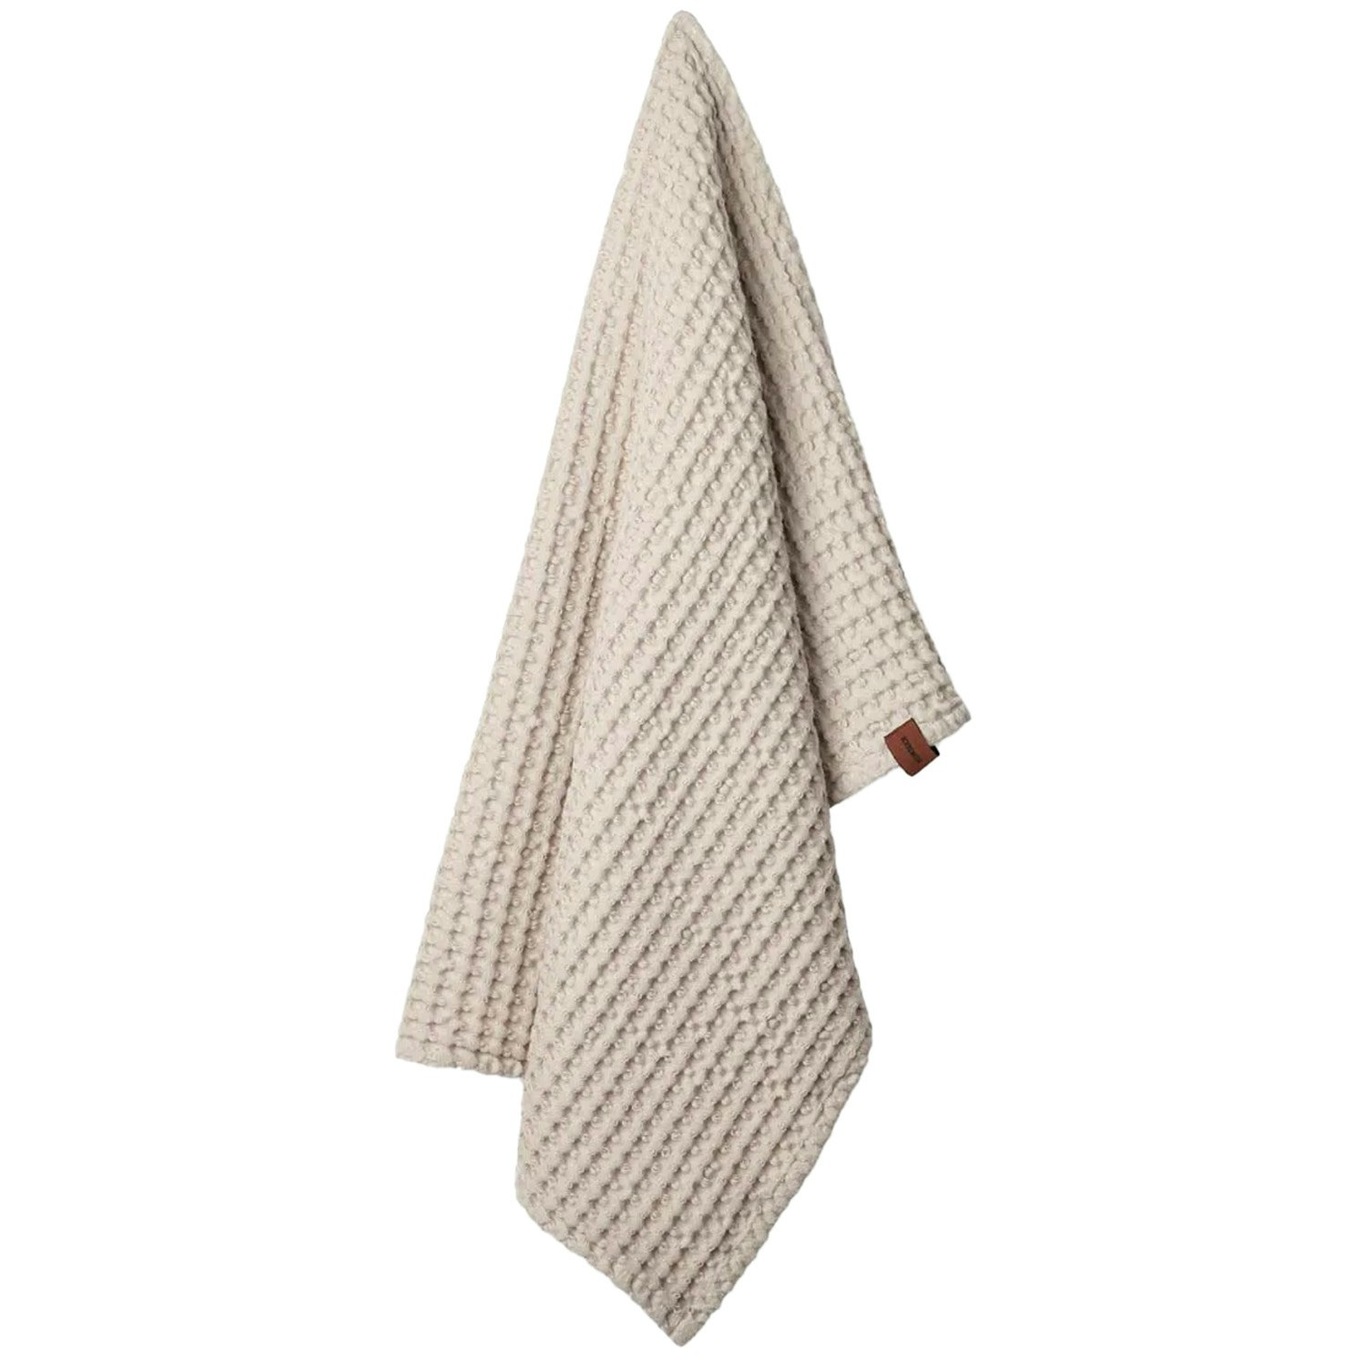 https://royaldesign.com/image/2/humdakin-waffle-hand-towel-light-stone-0?w=800&quality=80